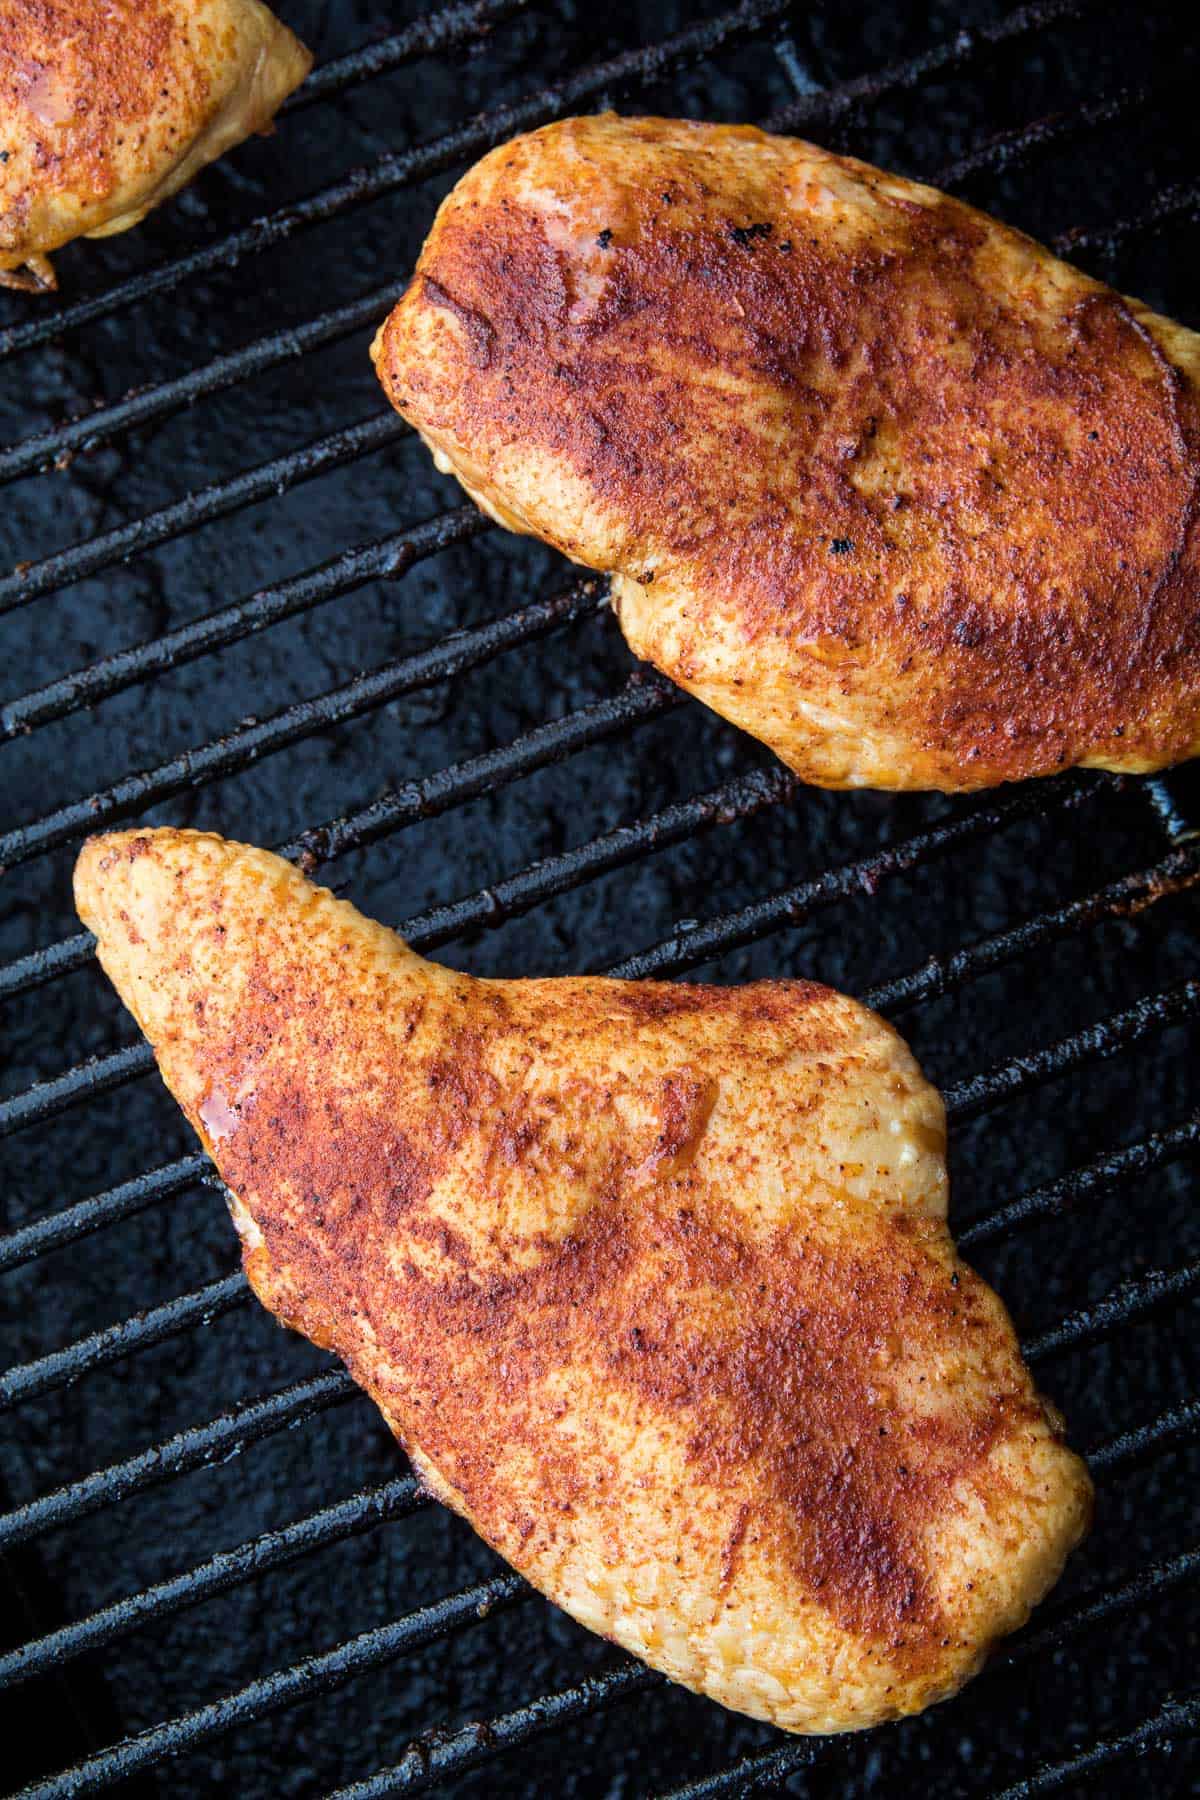 Seasoned chicken breasts on Traeger smoker